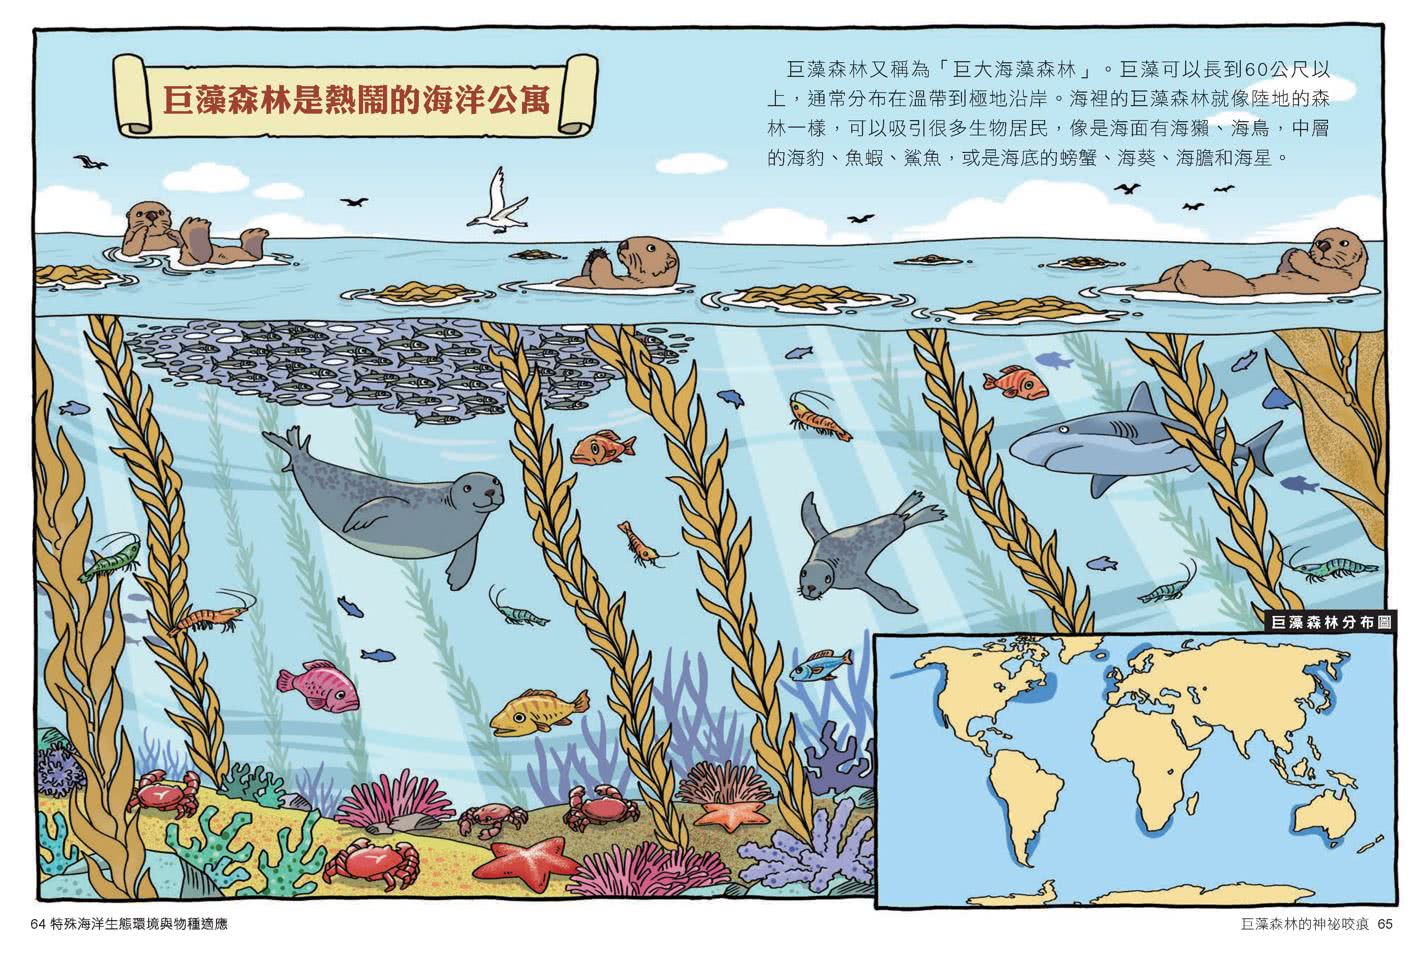 達克比辦案13：海洋酷斯拉：特殊海洋生態環境與物種適應